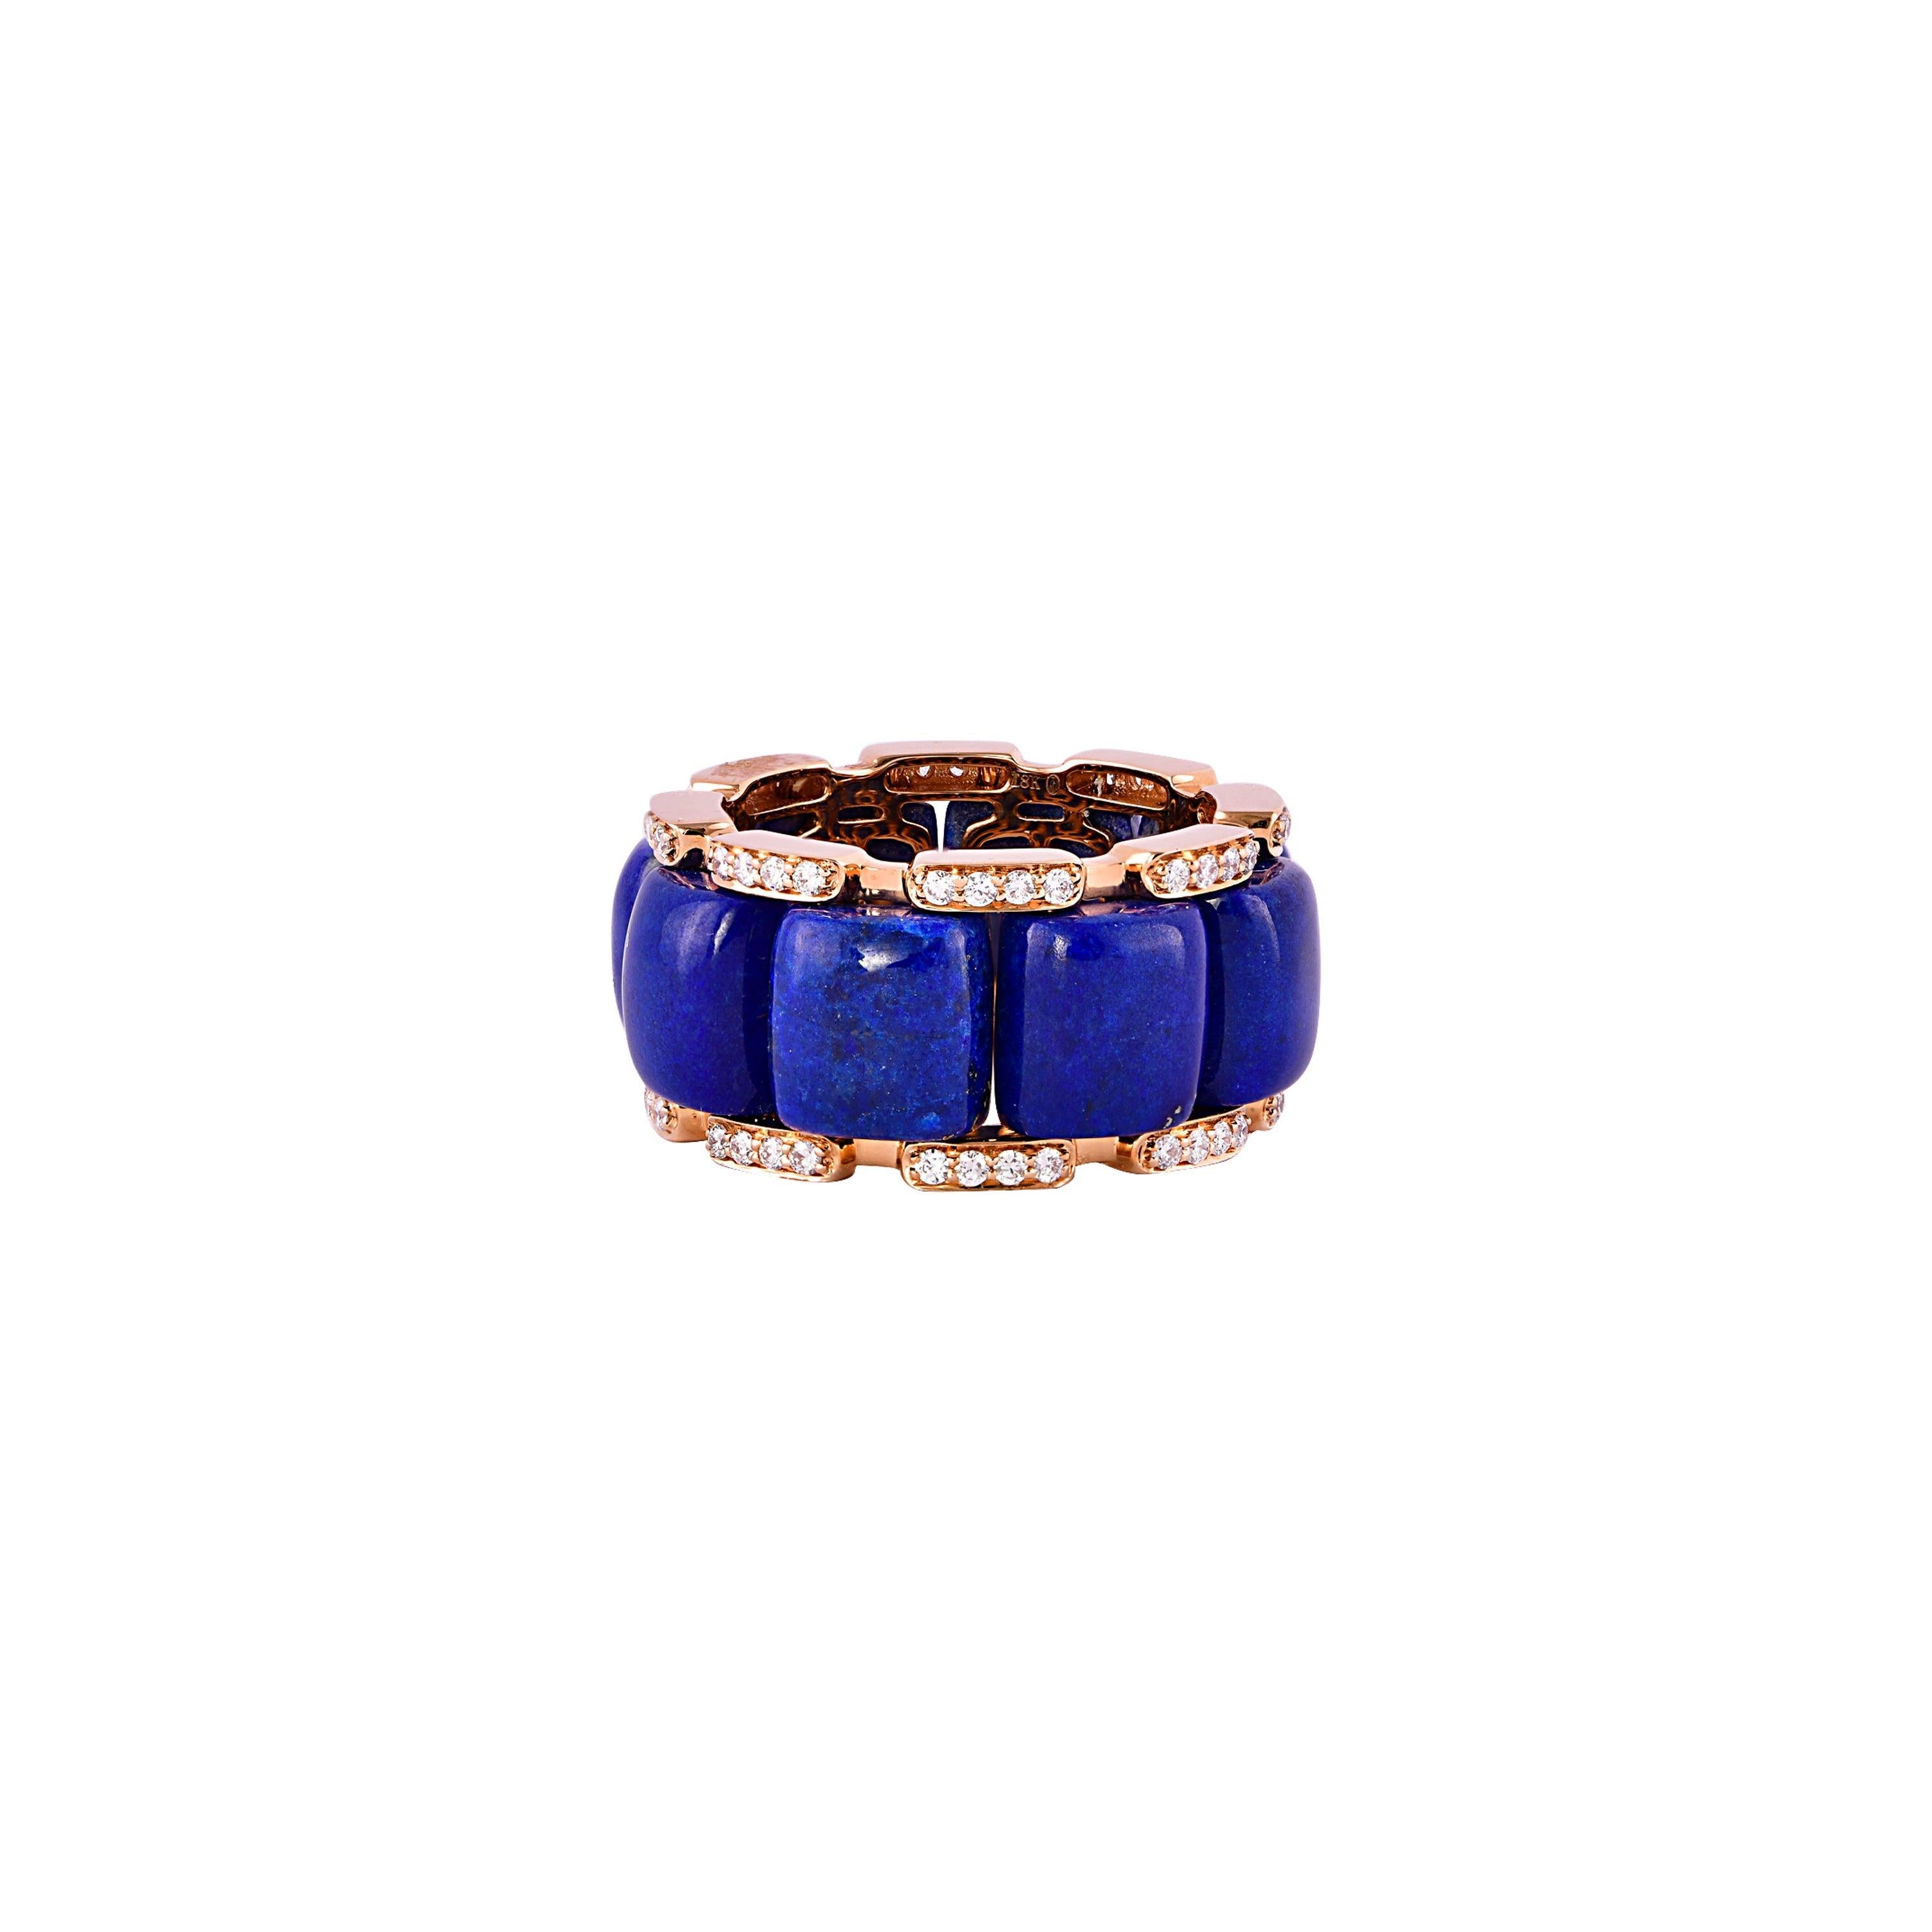 For Sale:  19.32 Carat Lapis Lazuli and White Diamond Ring in 18 Karat Rose Gold 5